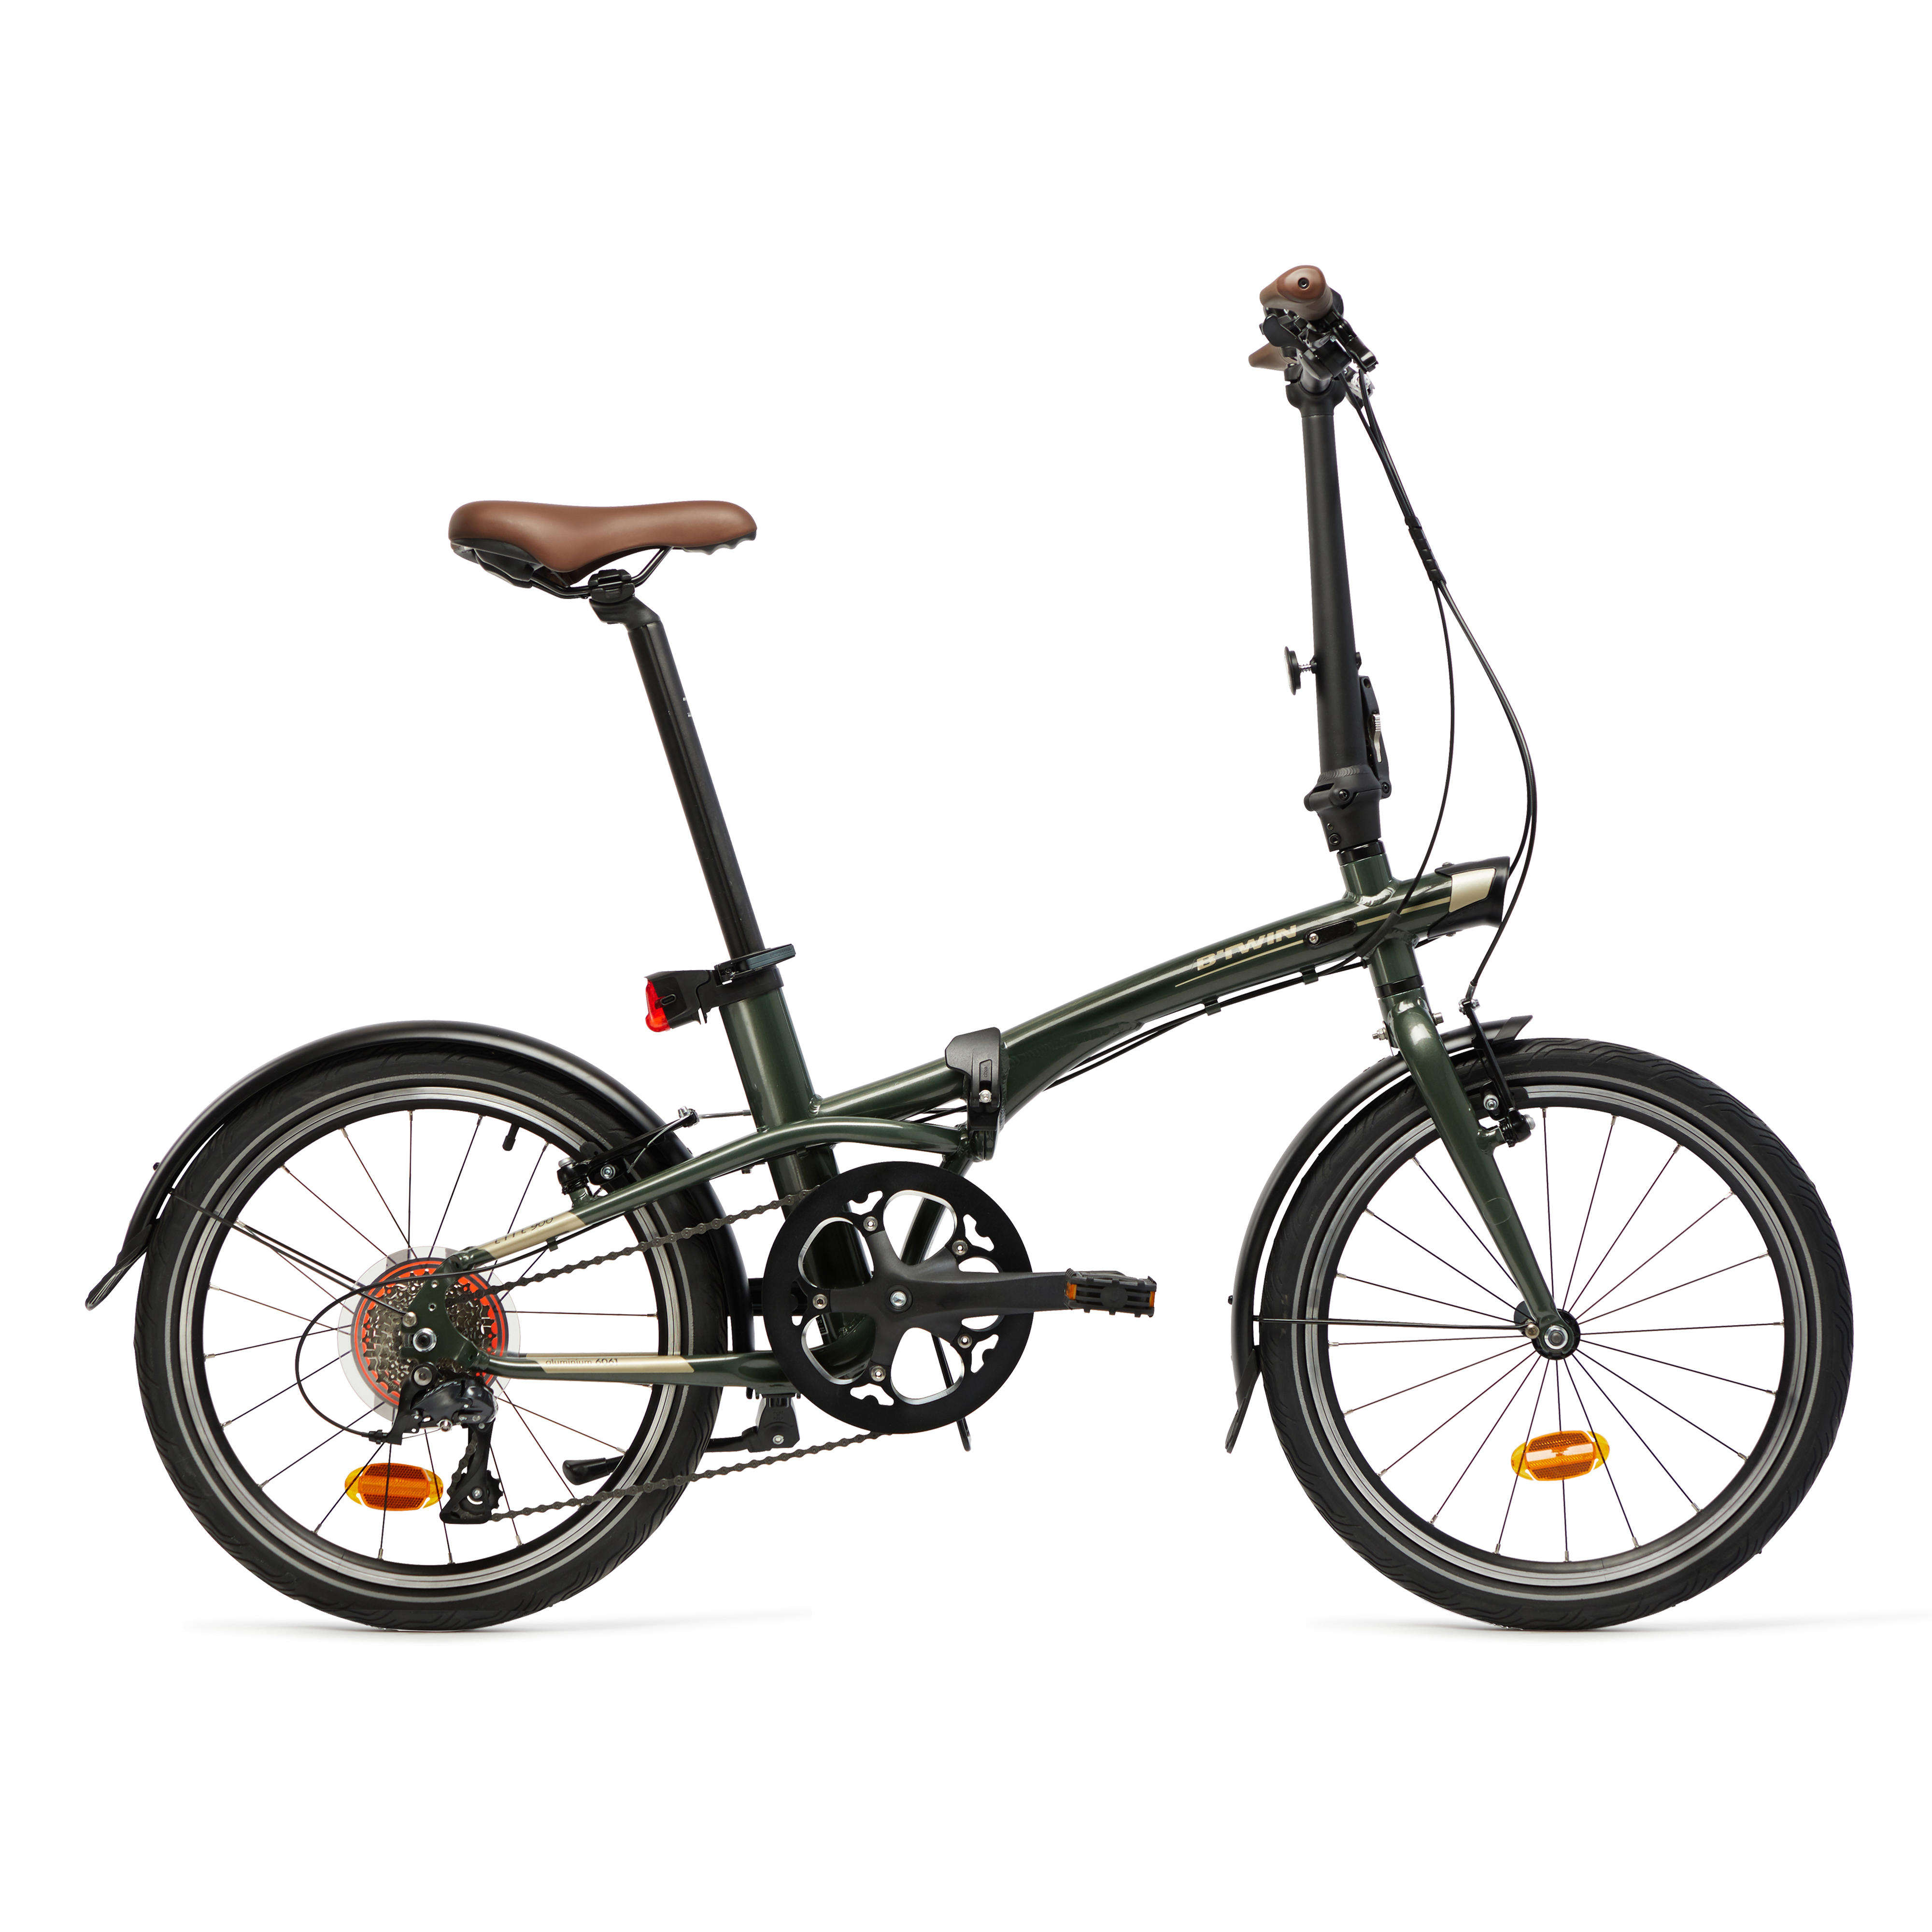 Bicicletă pliabilă TILT 900 Kaki BTWIN imagine noua